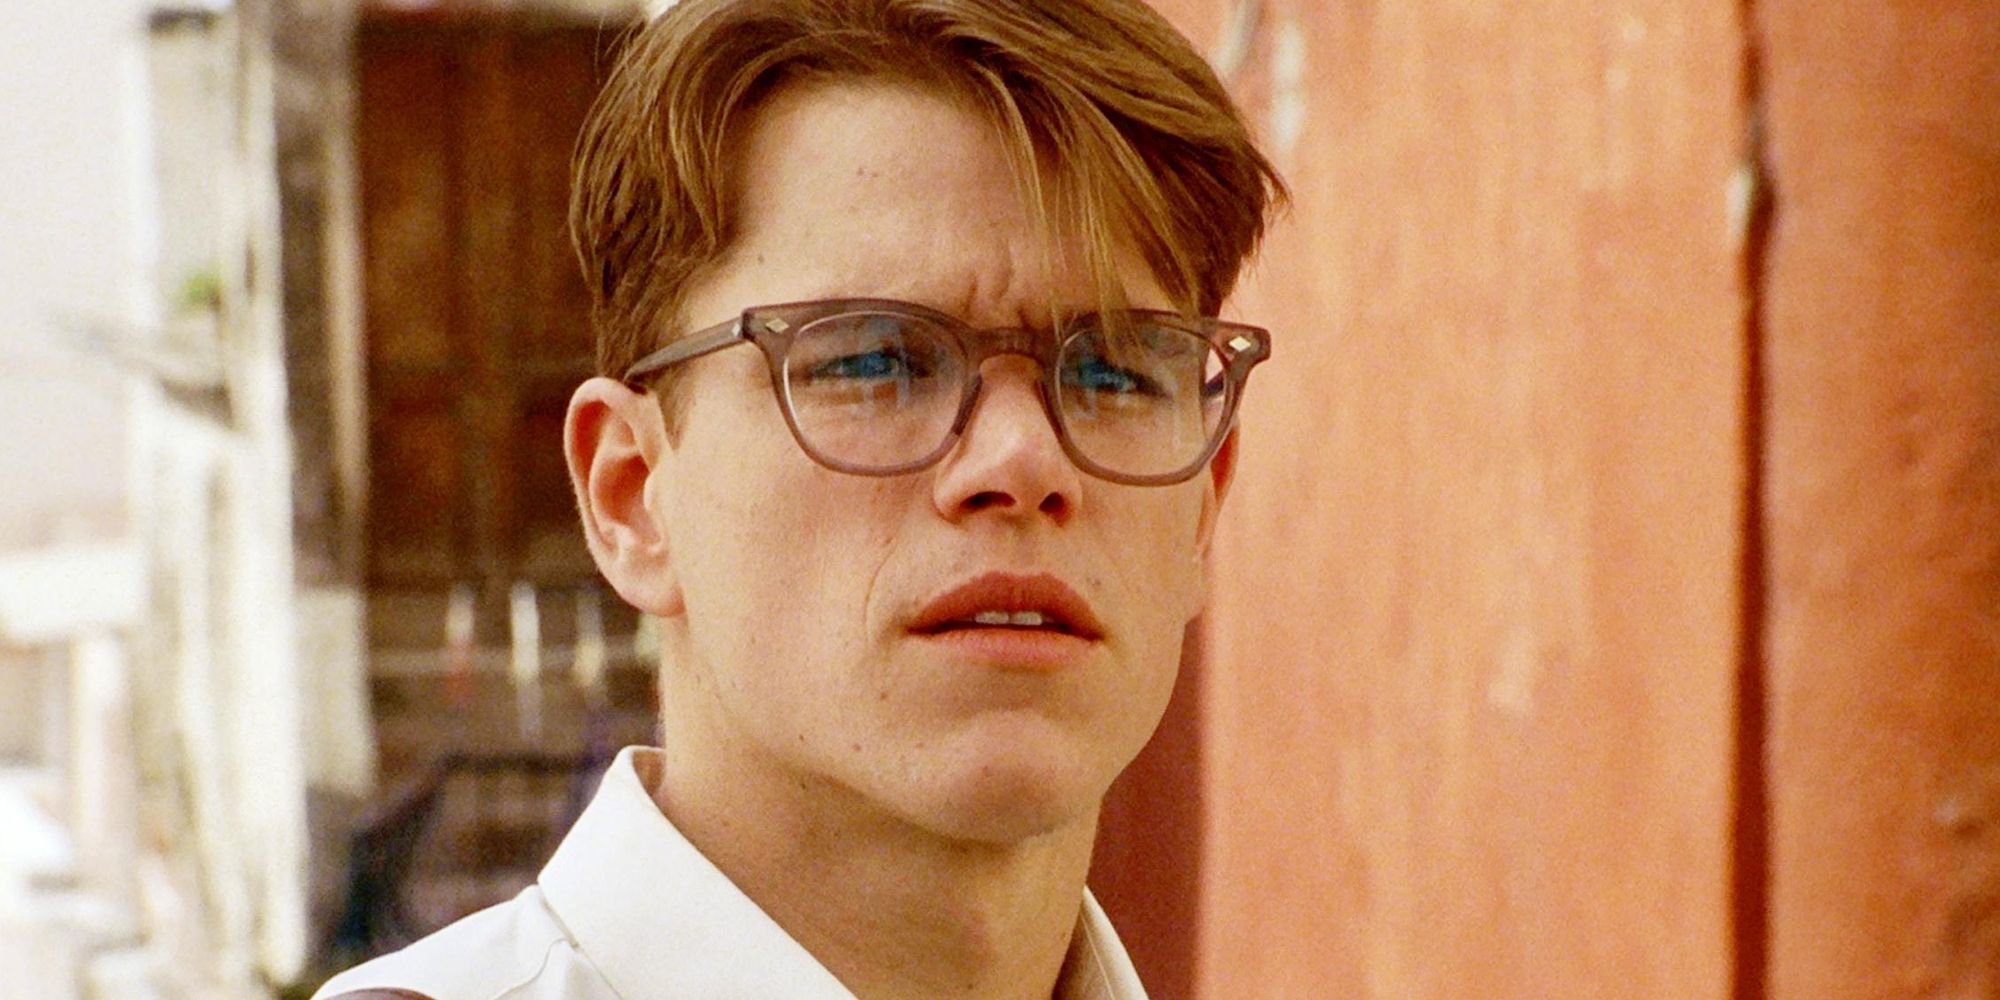 Matt Damons 10 Most Memorable Characters Ranked